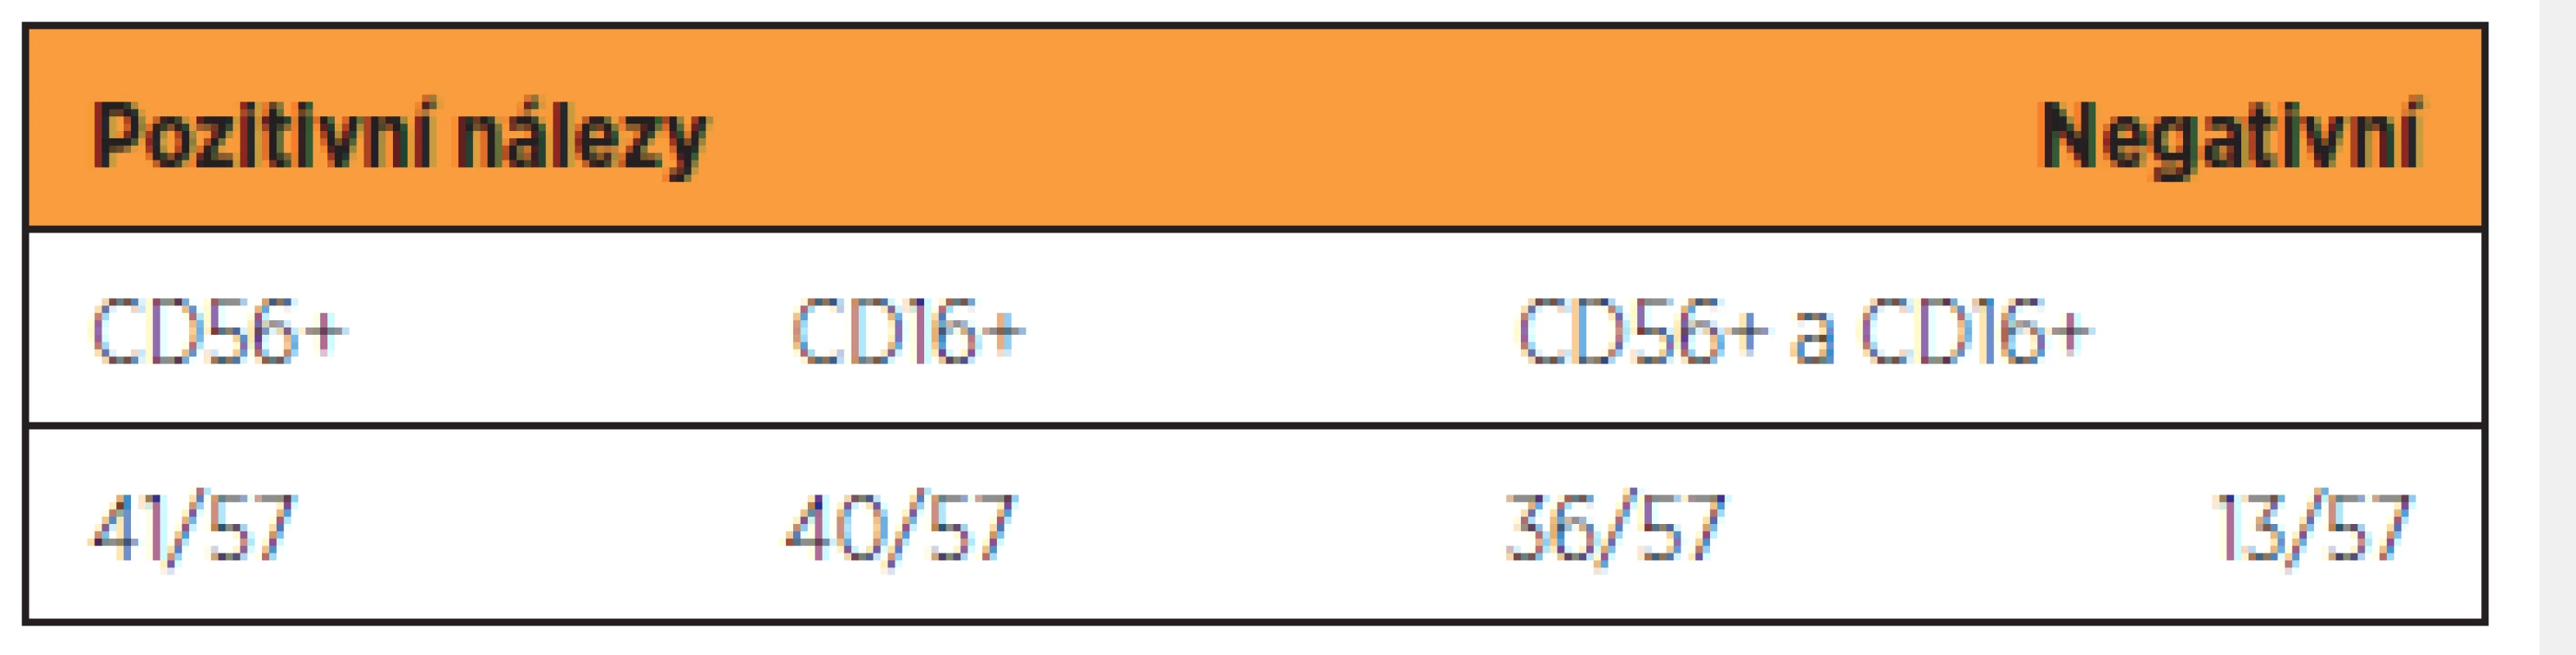 Výsledky imunohistochemického vyšetření endometria na NK bb CD56+ a NK bb CD16+ 
u pacientek opakovaně potrácejících